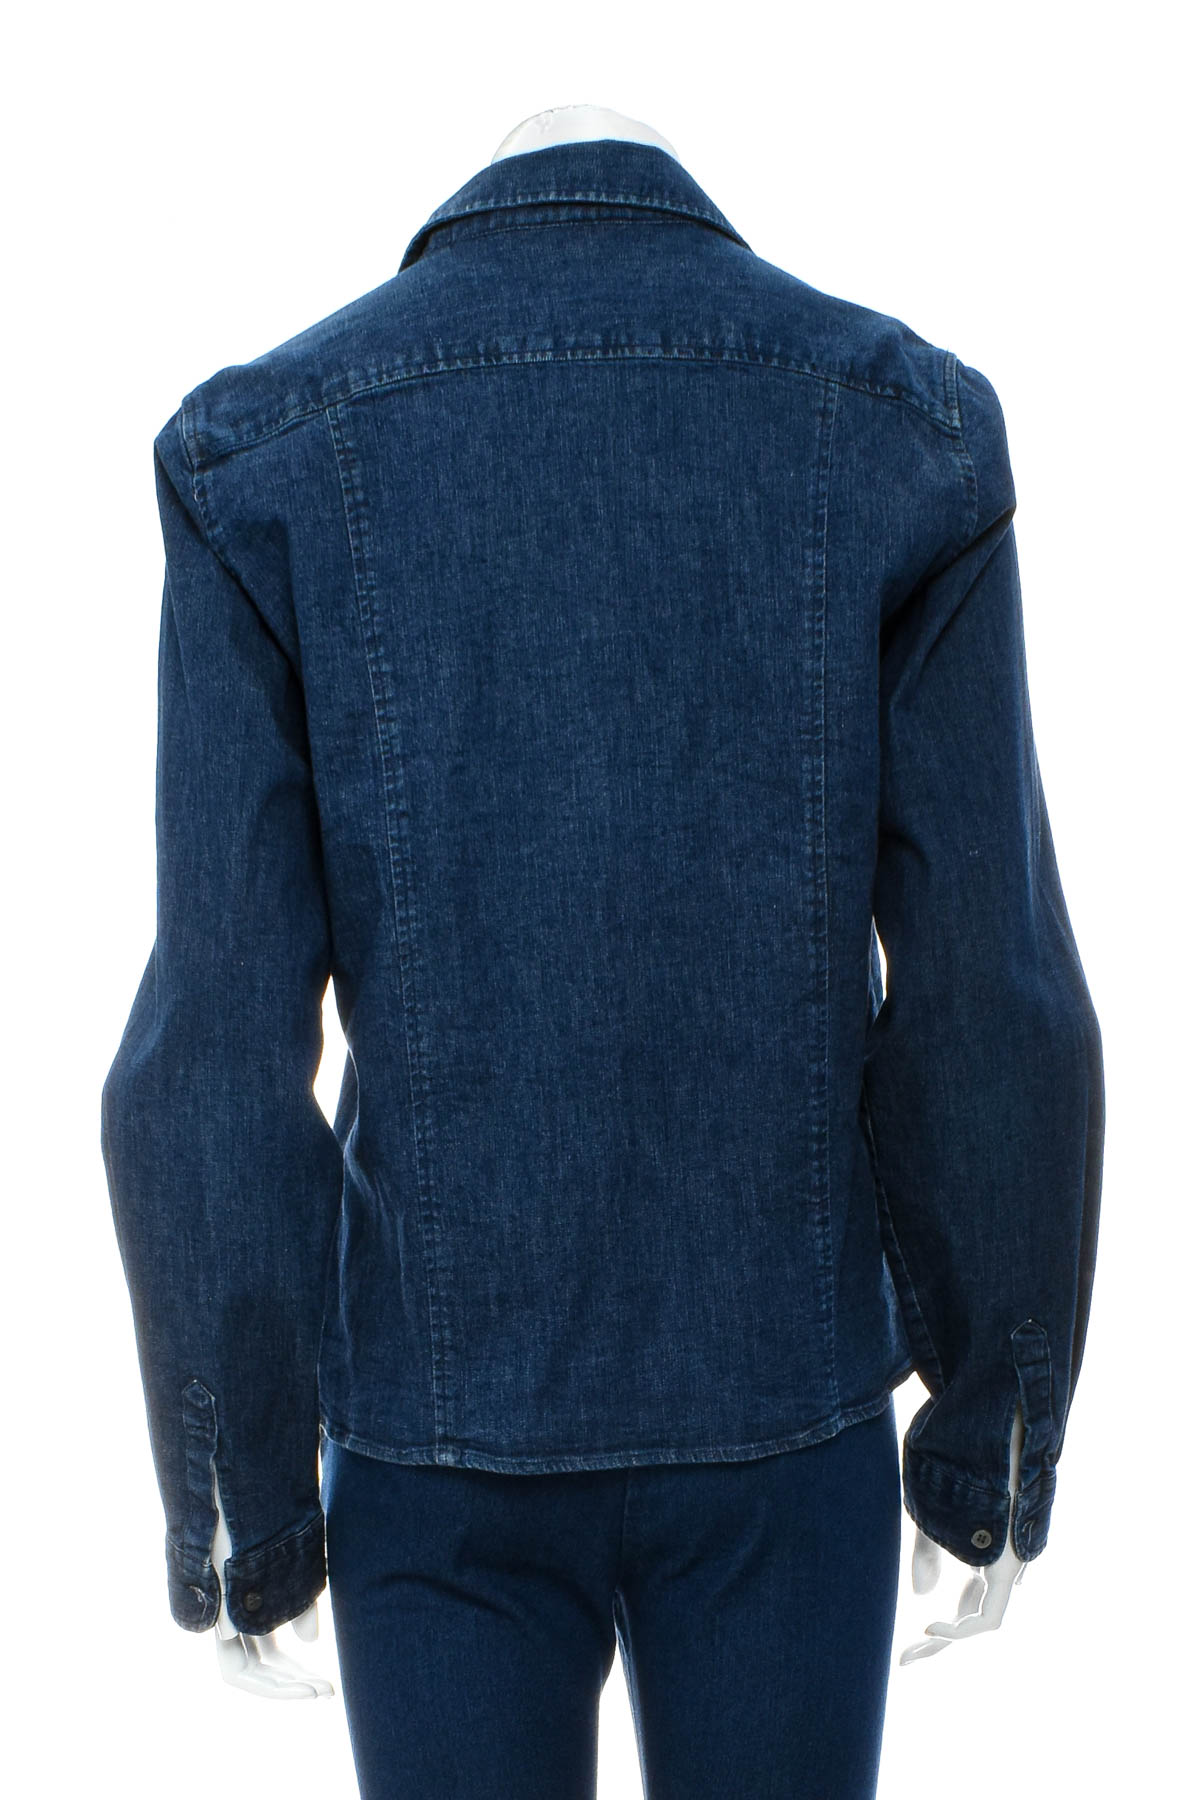 Damska koszula dżinsowa - American Outfitters - 1